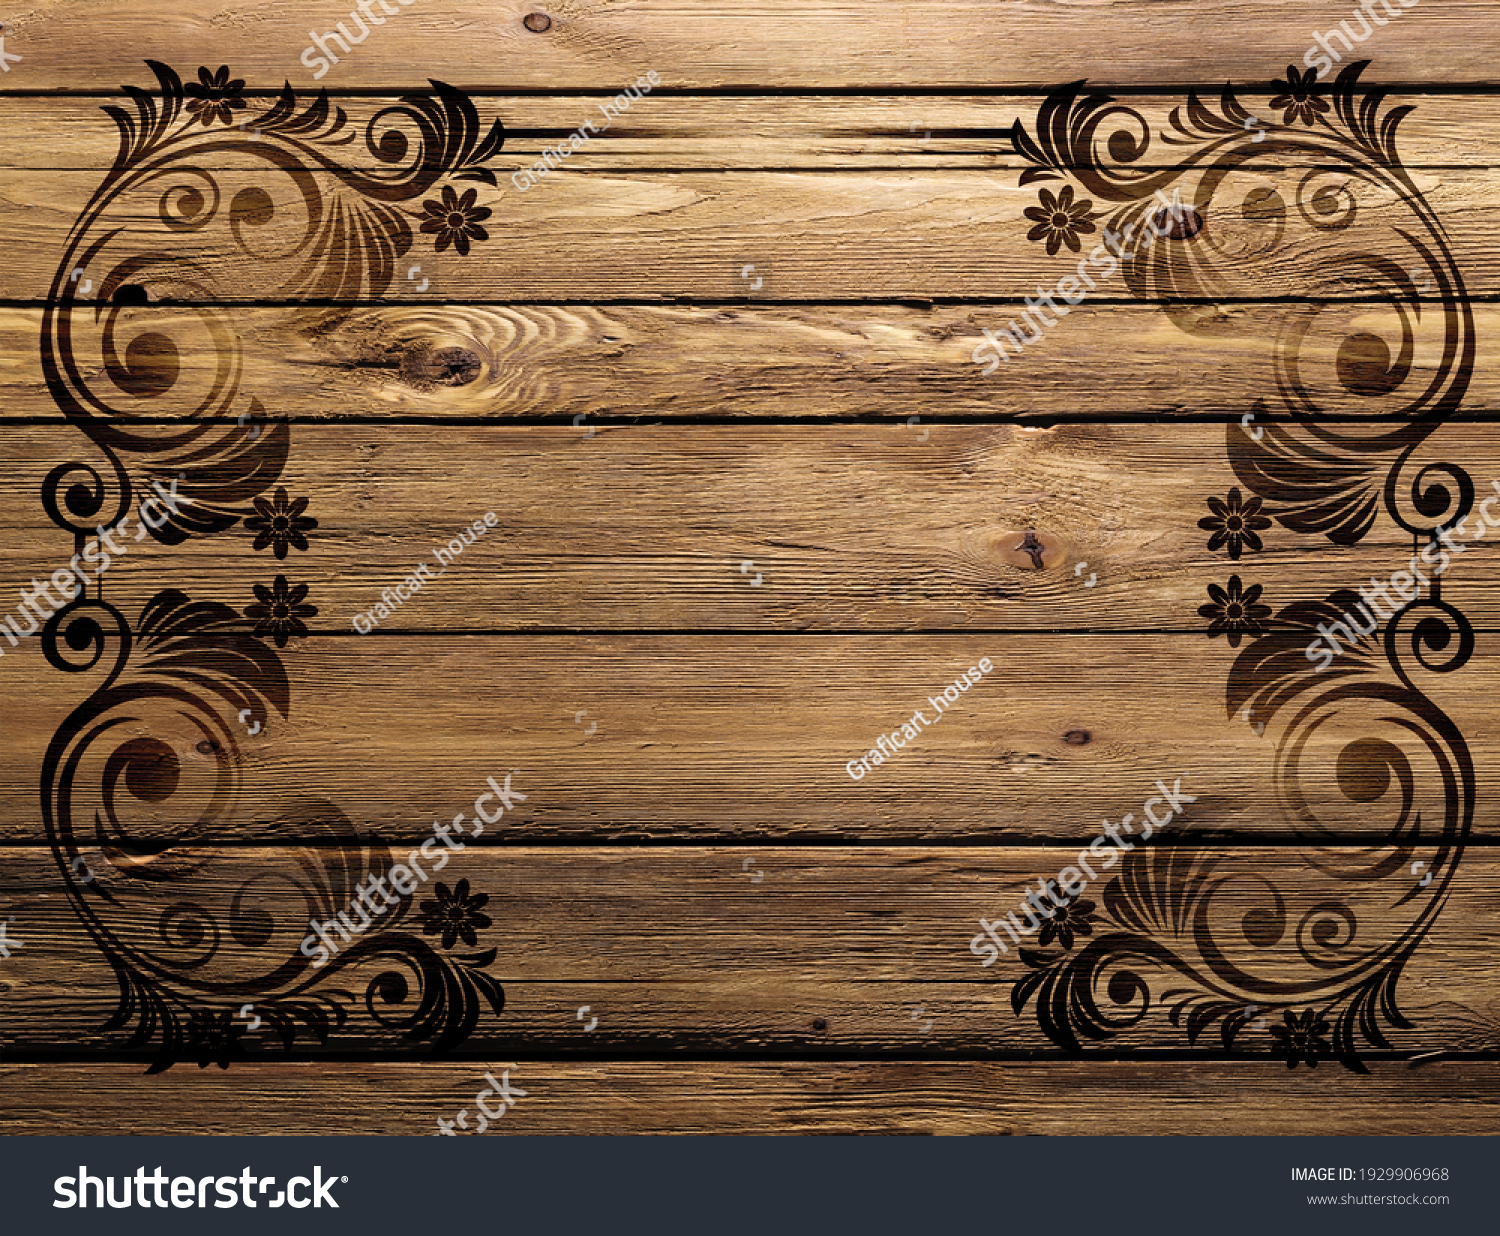 Фон для деревянных изделий